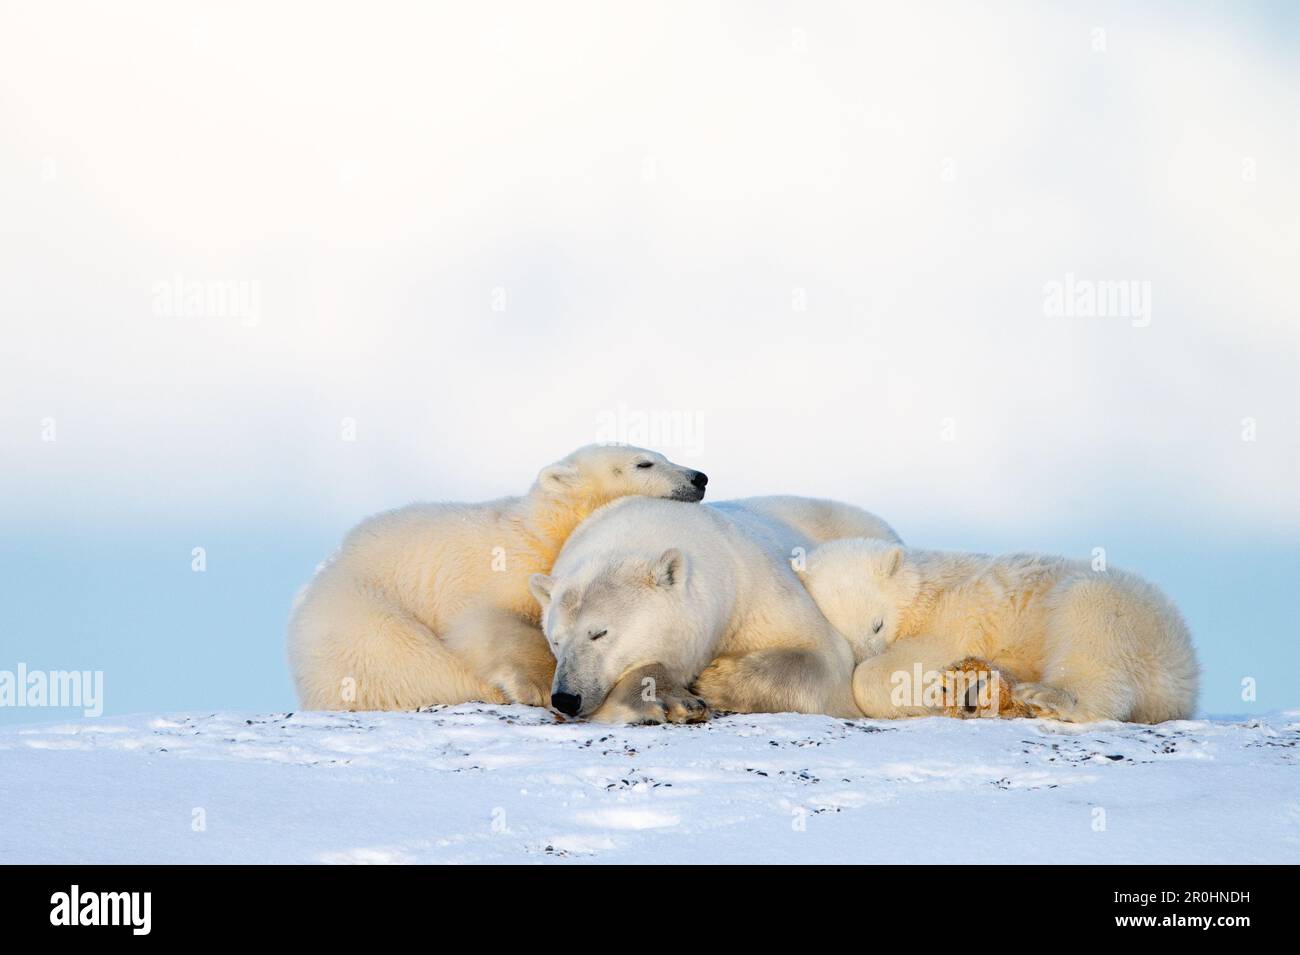 Une mère ours polaire (Ursus maritimus) s'est emmêlée de ses deux petits. Photographié dans la réserve naturelle nationale de l'Arctique, en Alaska. Banque D'Images